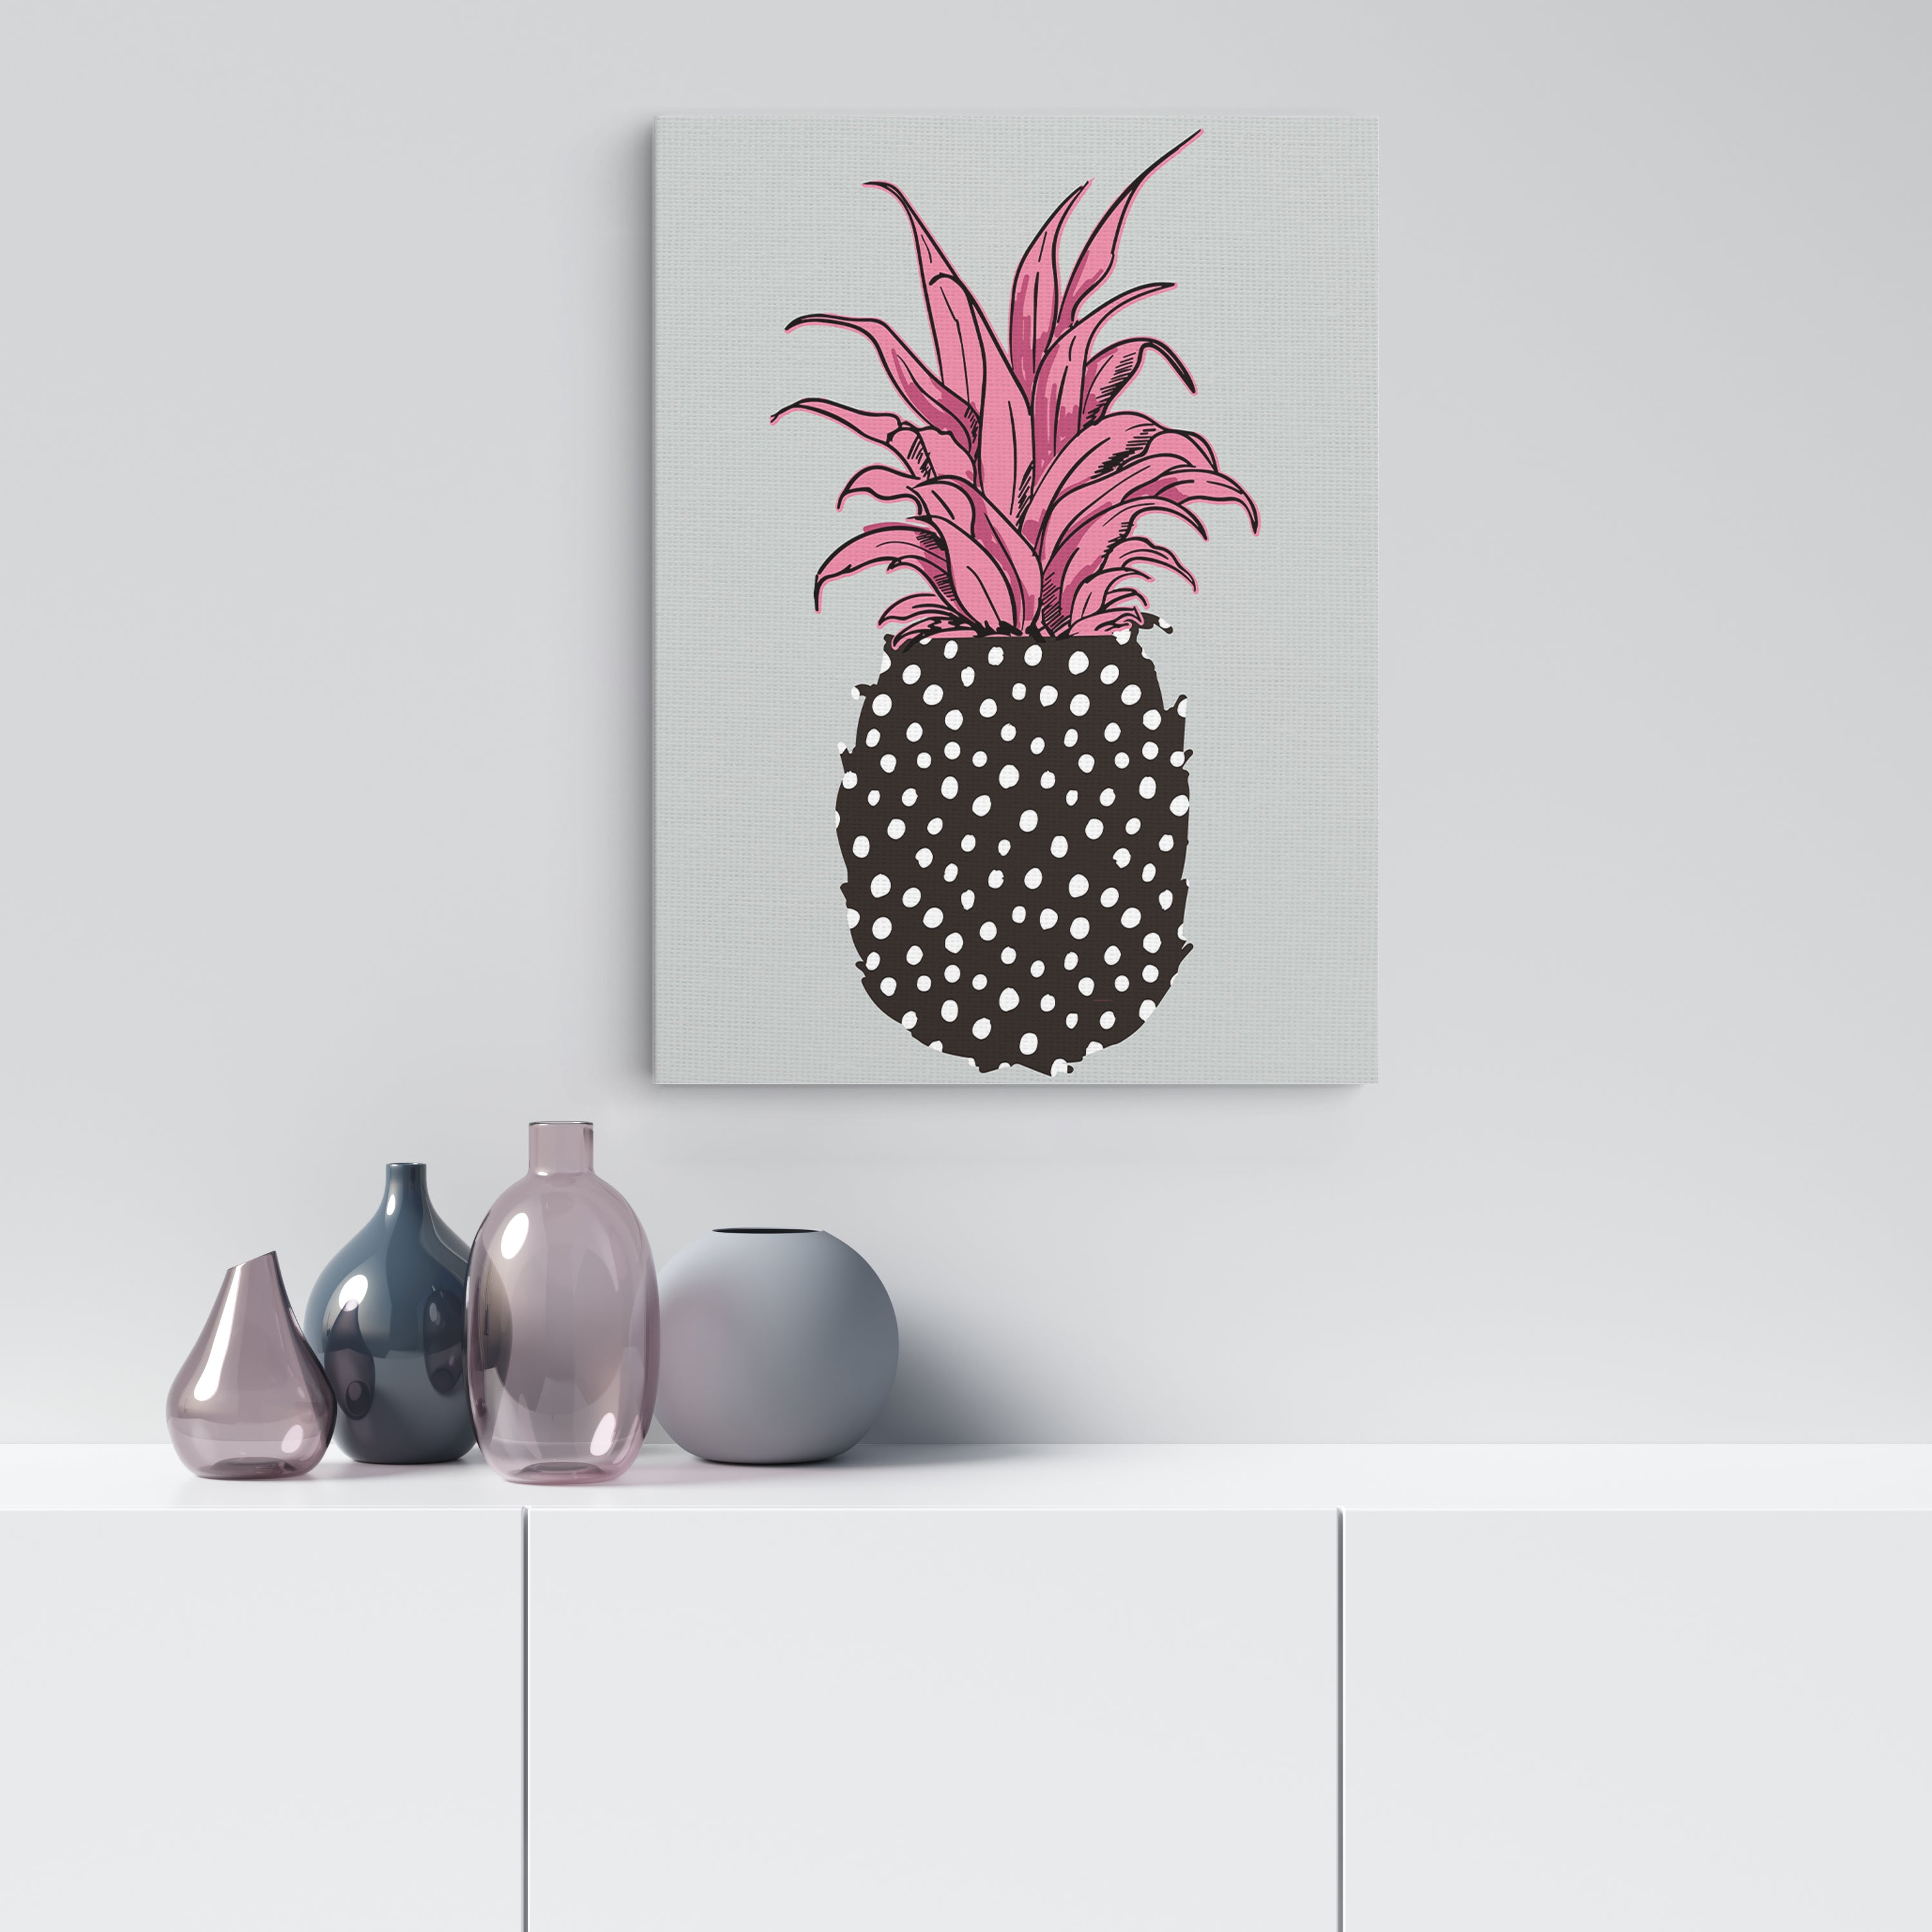 Polka-Dot Pineapple